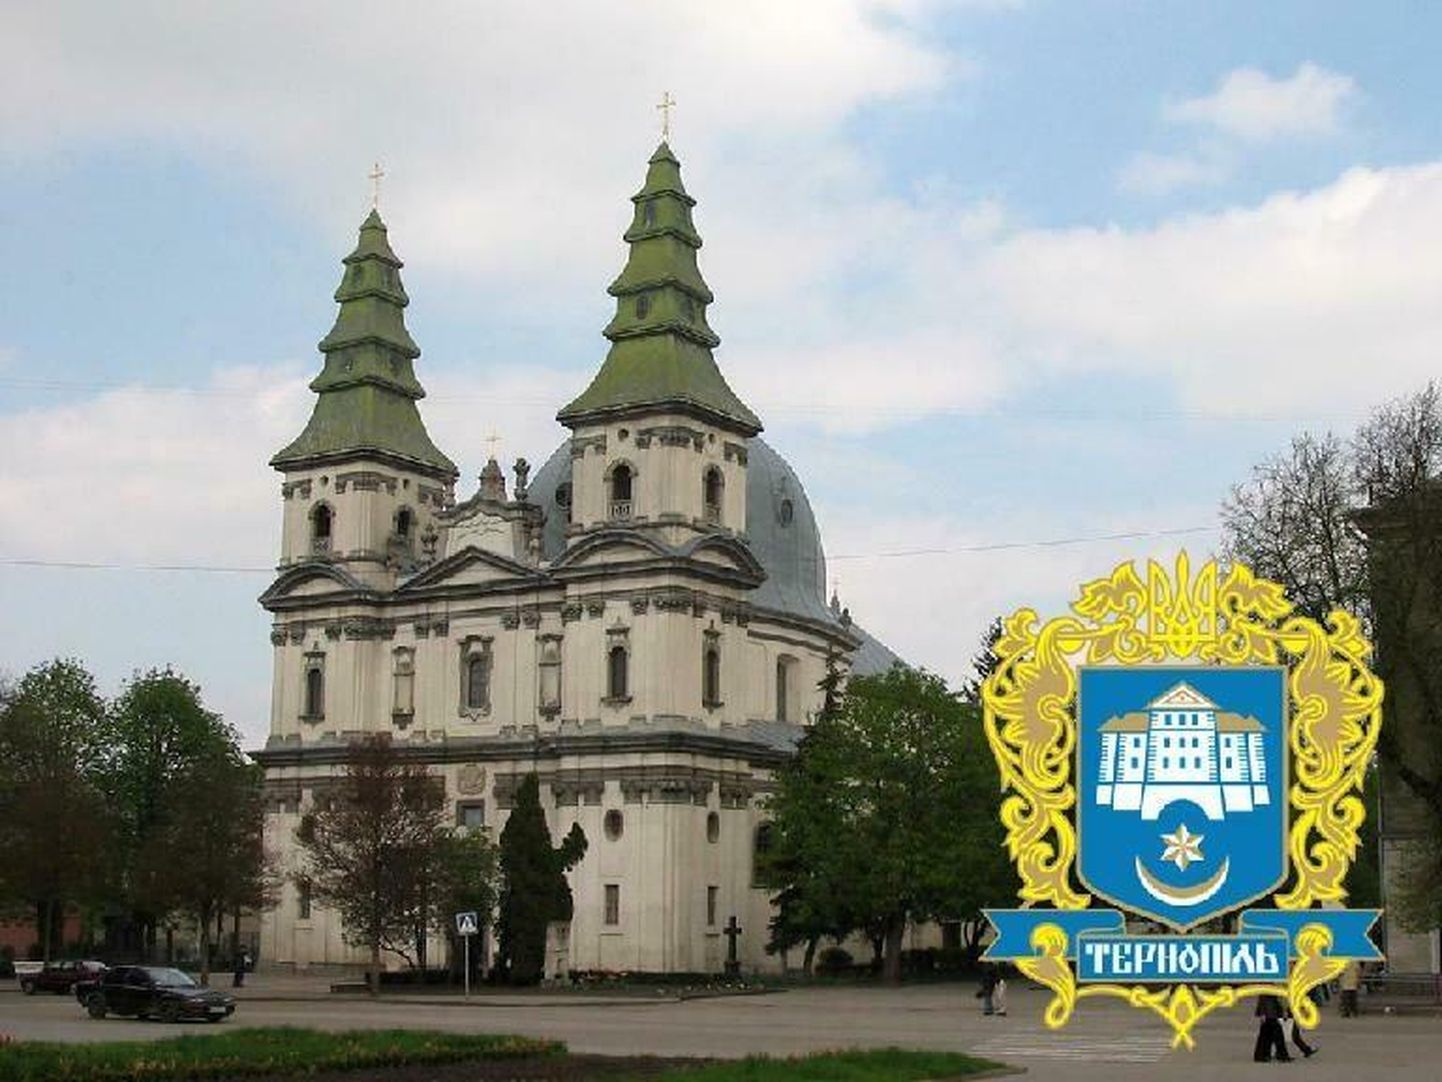 Город-побратим Вильянди Тернополь пригласил представителей Вильянди в гости 25-27 августа, но городские власти объявили, что не смогут посетить город в этом году.